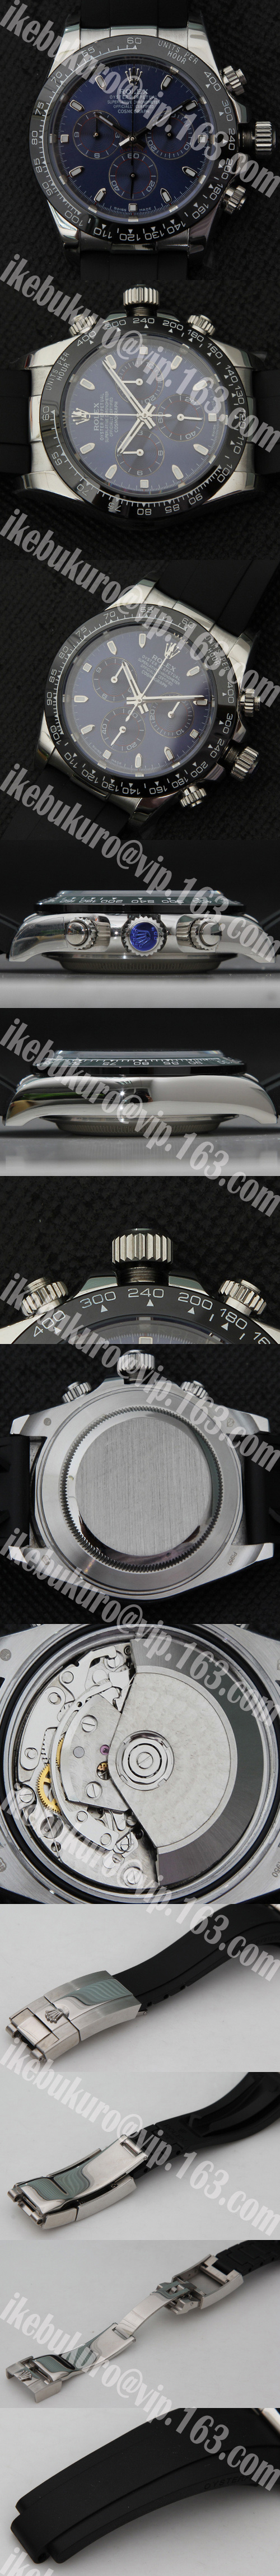 ロレックスデイトコピー時計、ナエバーローズゴールド Asian 7750搭載 28800振動